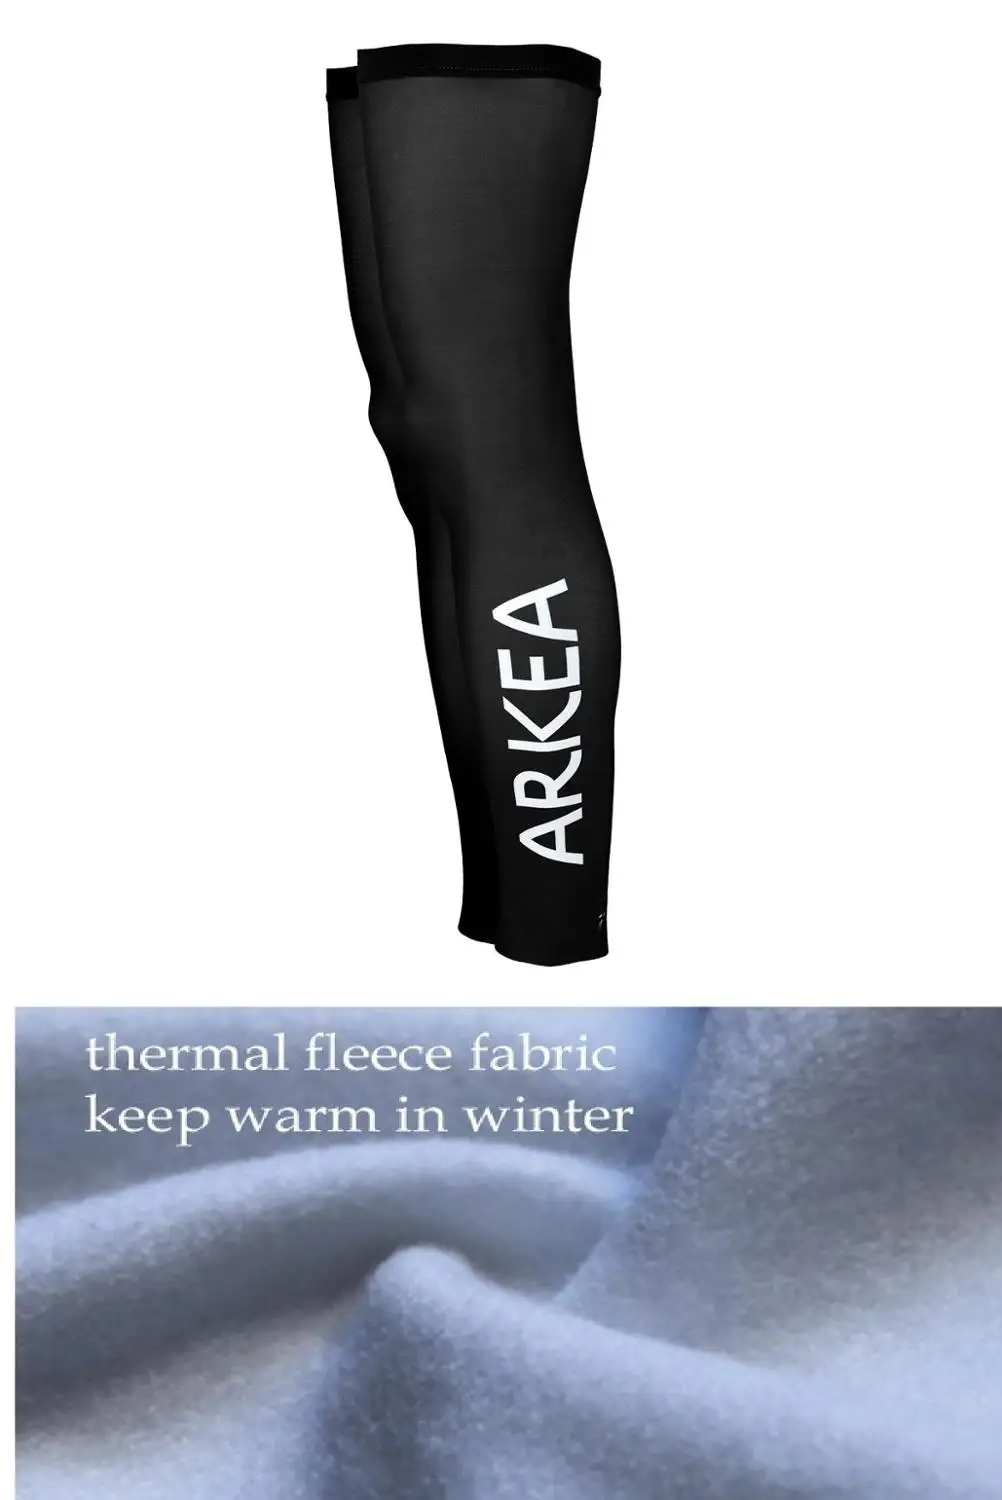 

Зимние флисовые теплые 2020 ARKEA SAMSIC командные велосипедные трикотажные гетры солнцезащитные УФ-защитные теплые леггинсы одна пара SZIE XS-4XL